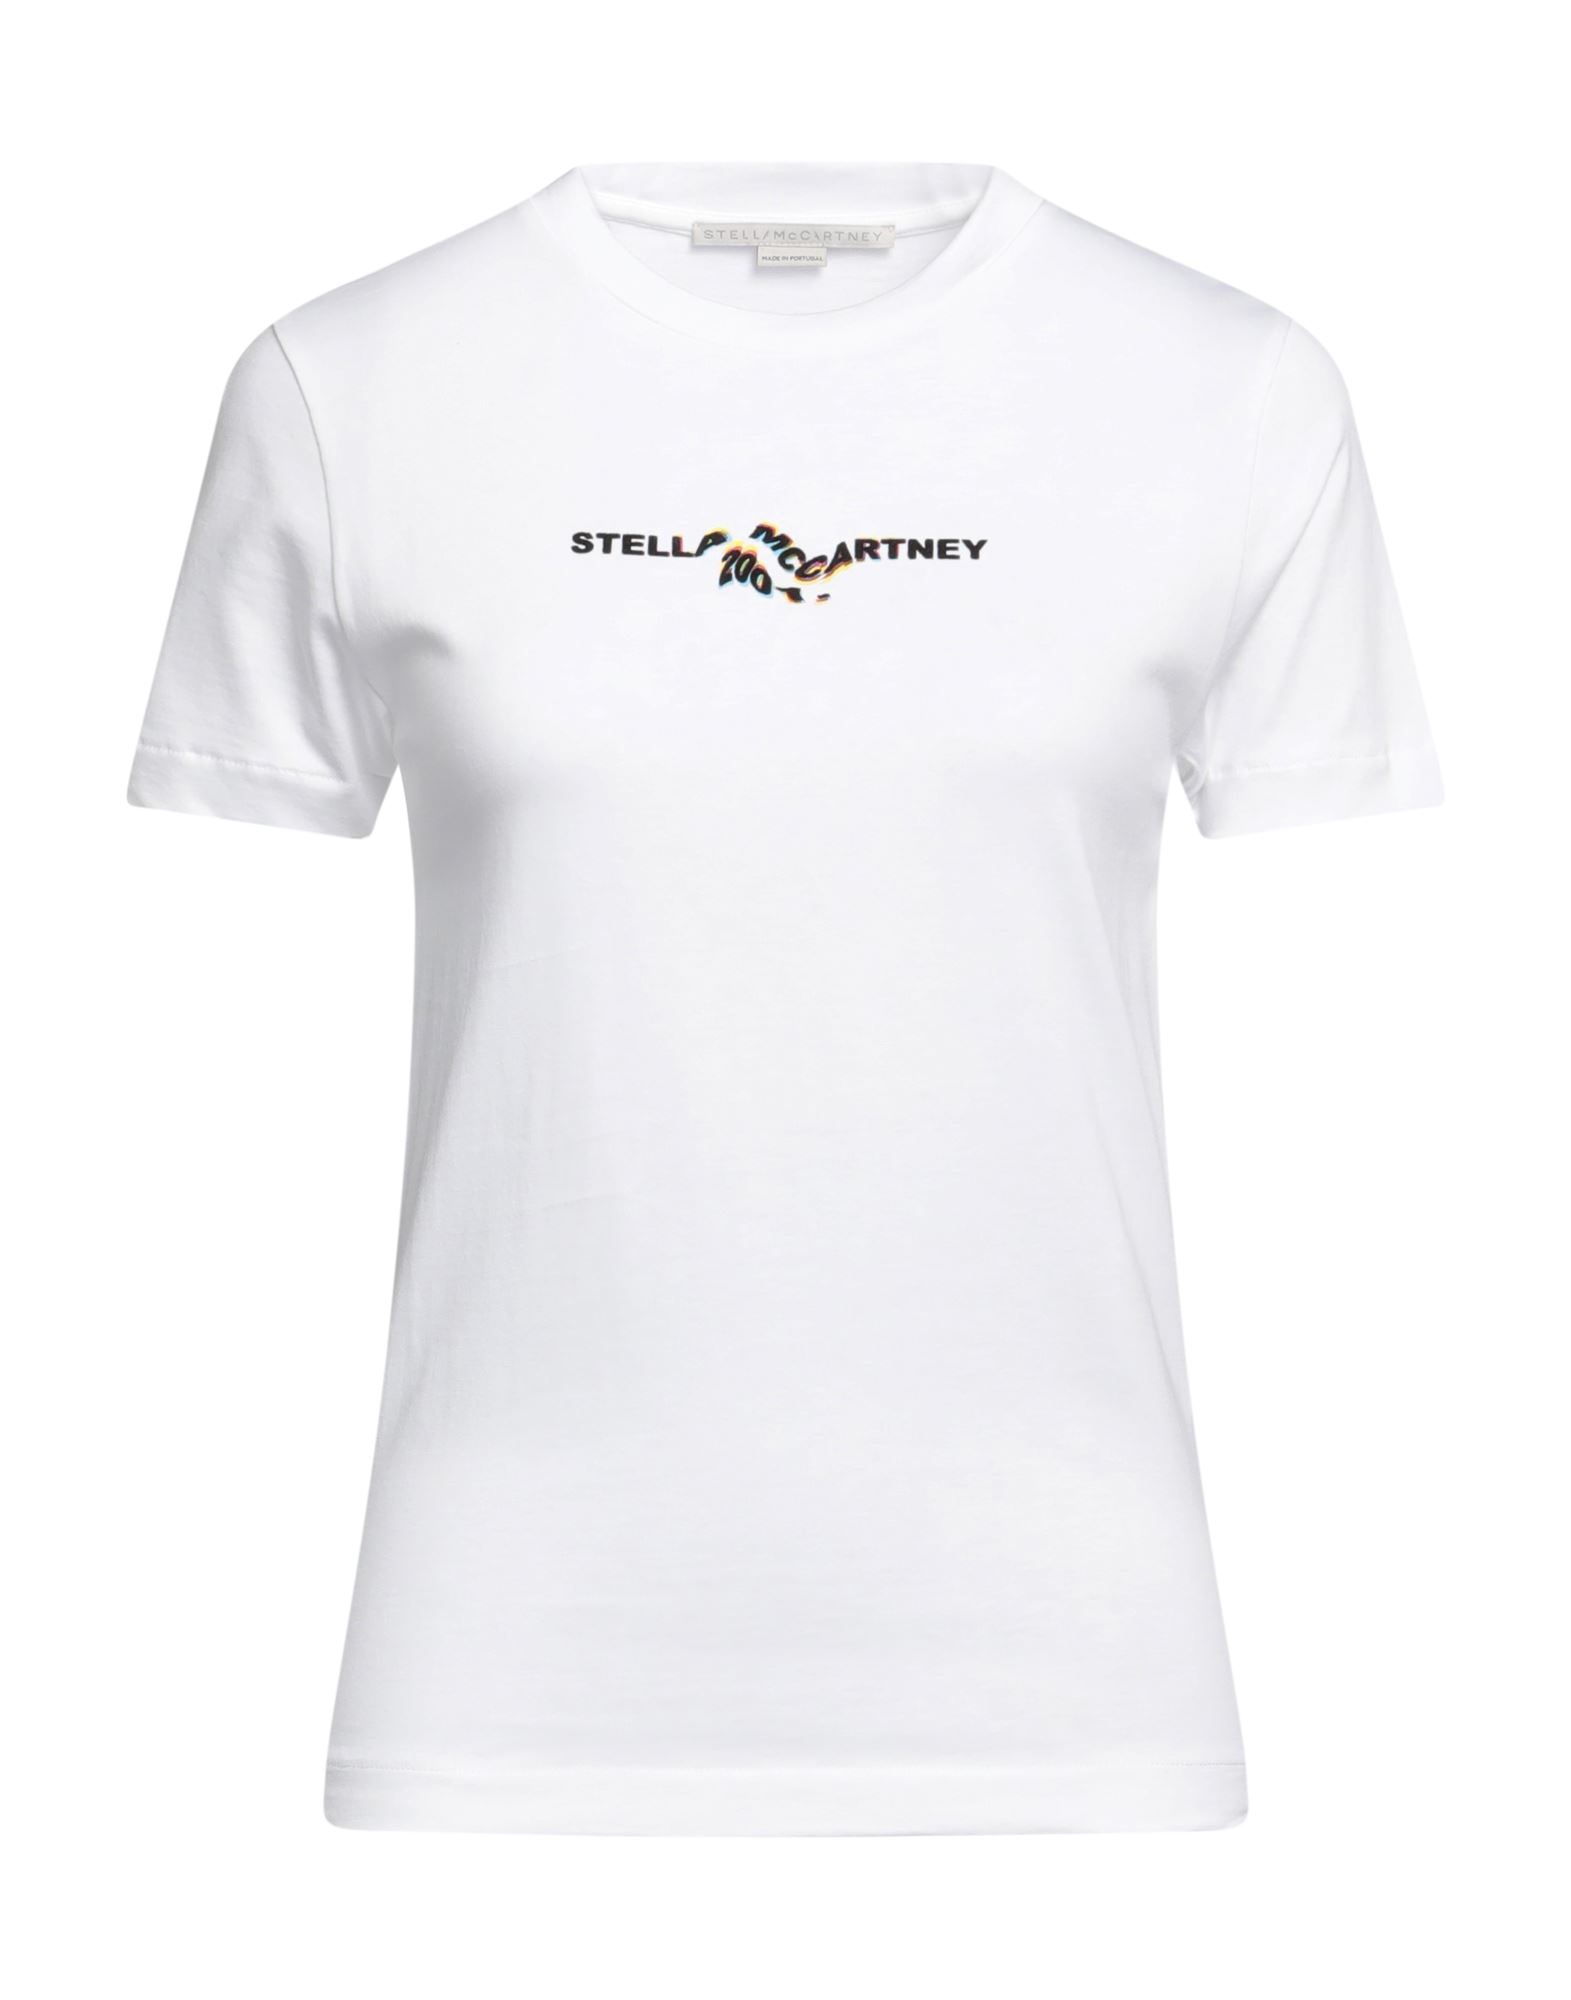 STELLA McCARTNEY T-shirts Damen Weiß von STELLA McCARTNEY